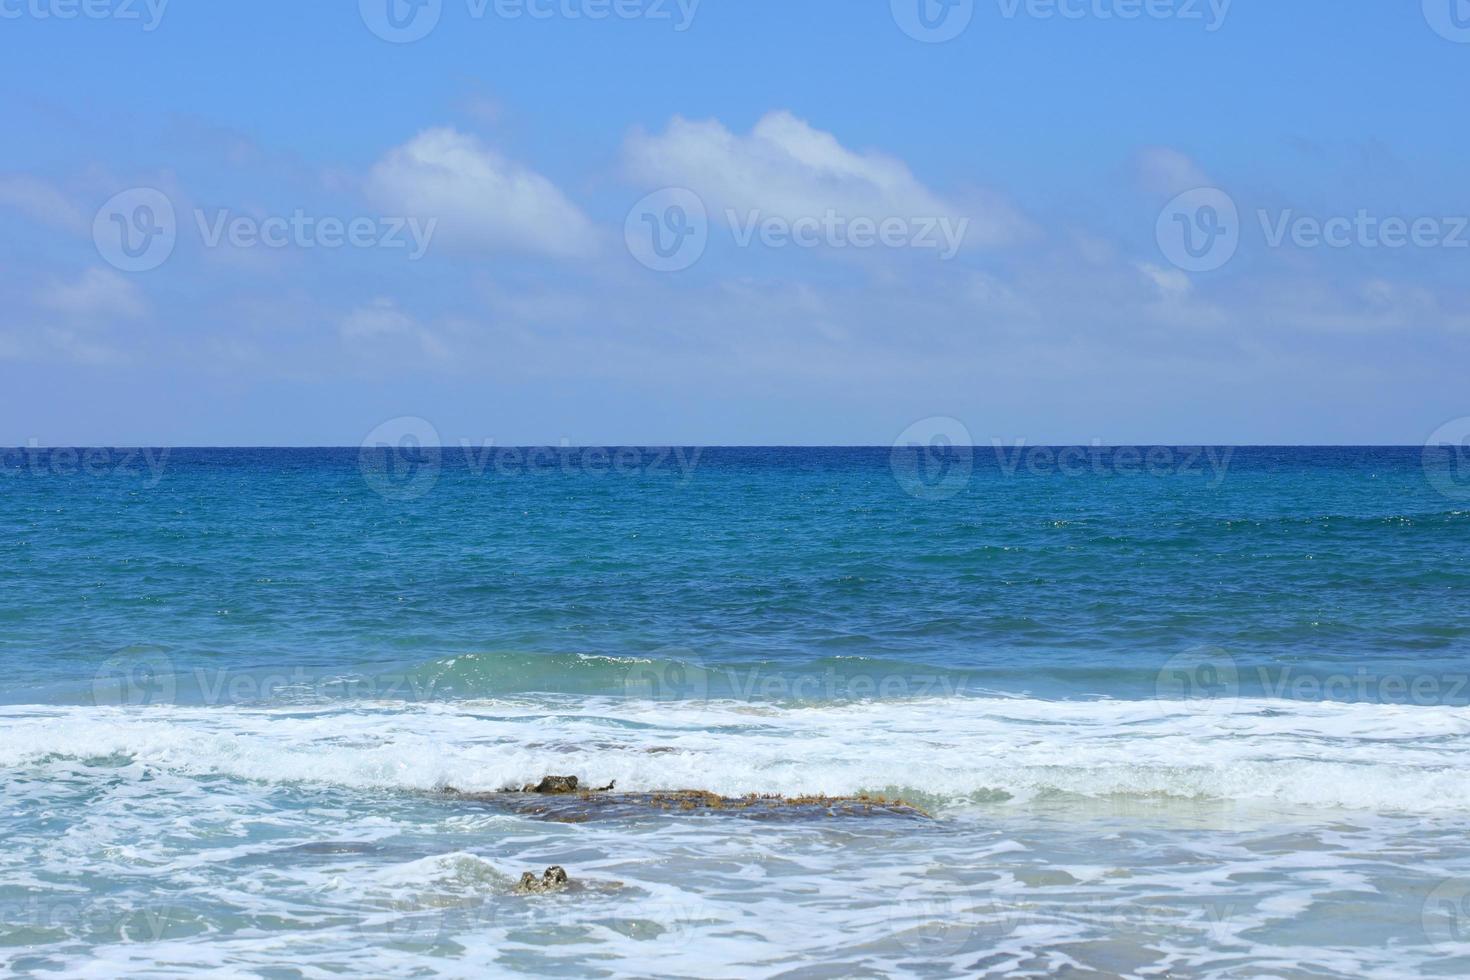 falassarna strand blauwe lagune Kreta eiland zomer 2020 covid19 vakantie foto